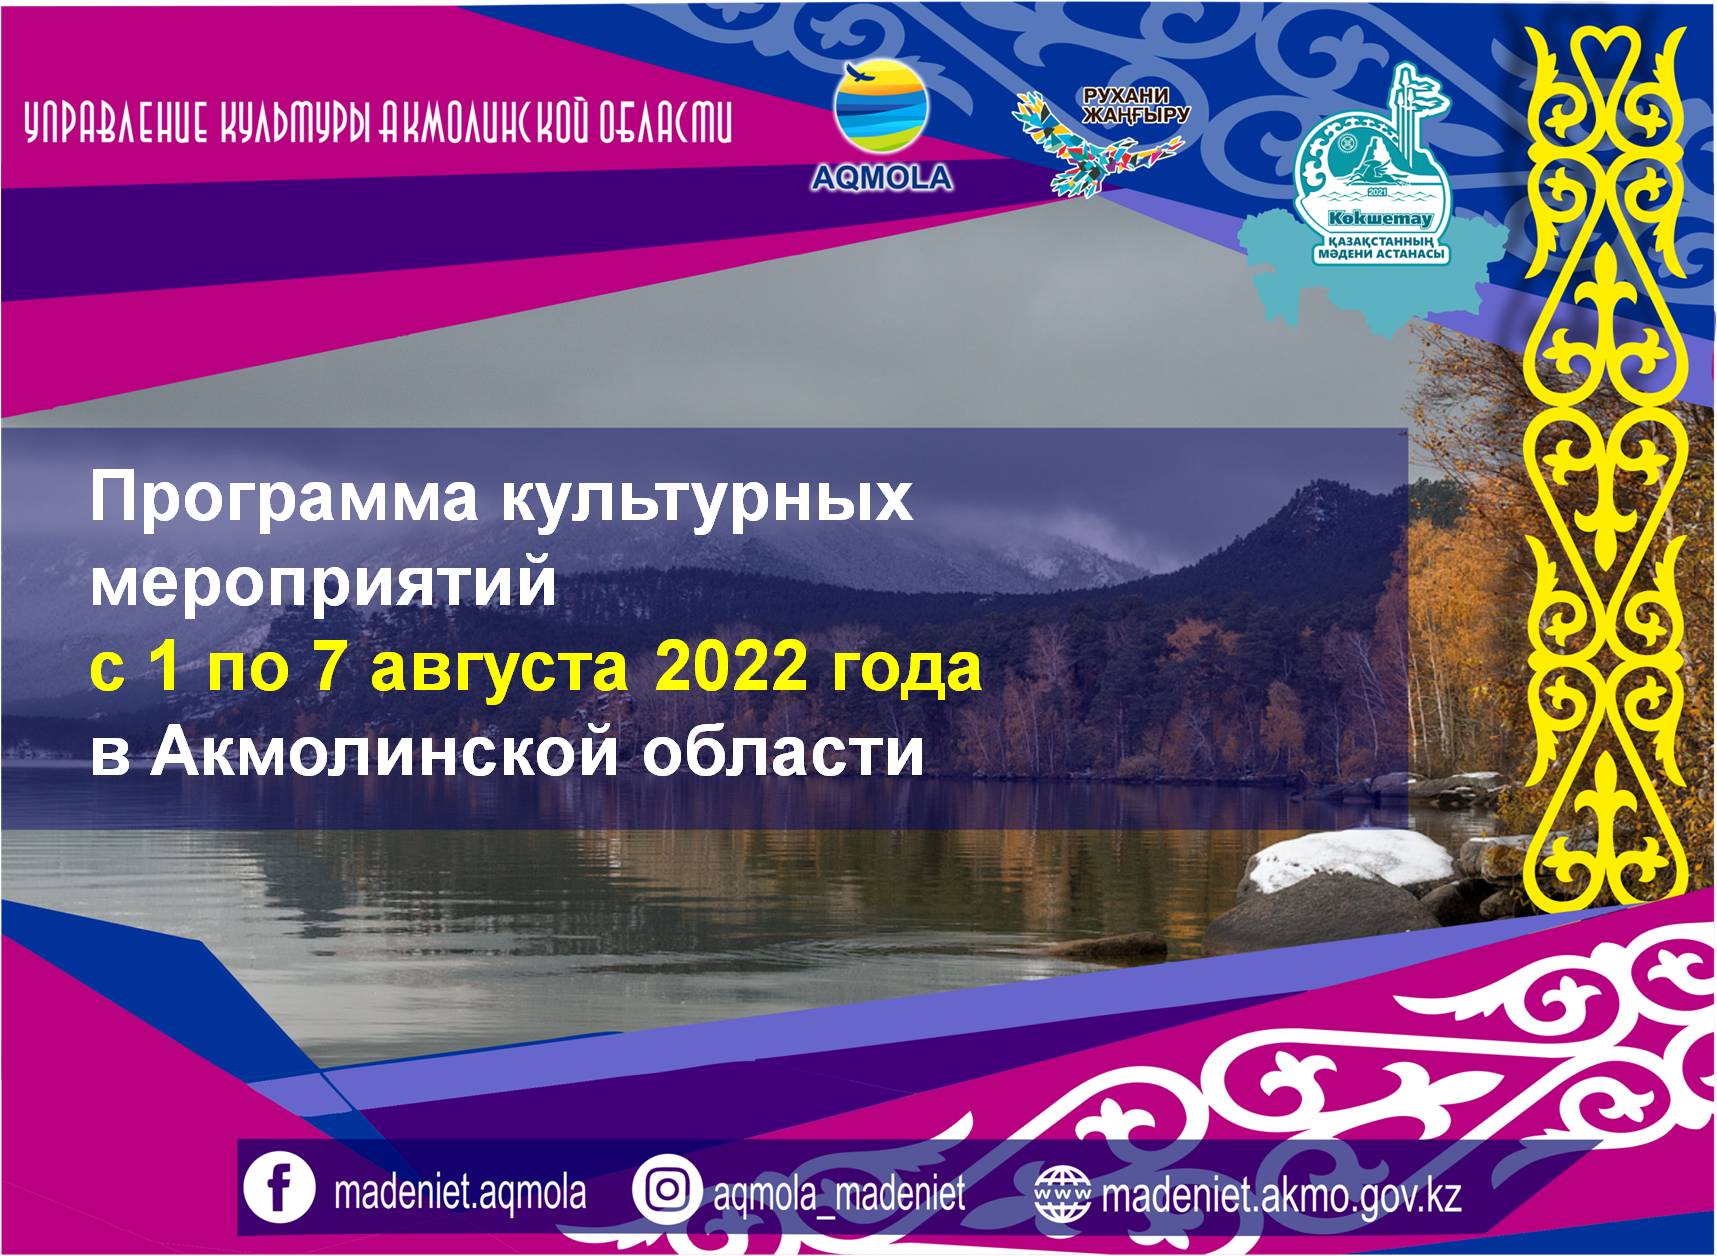 Программа культурных мероприятий с 1 по 7 августа 2022 года в Акмолинской области